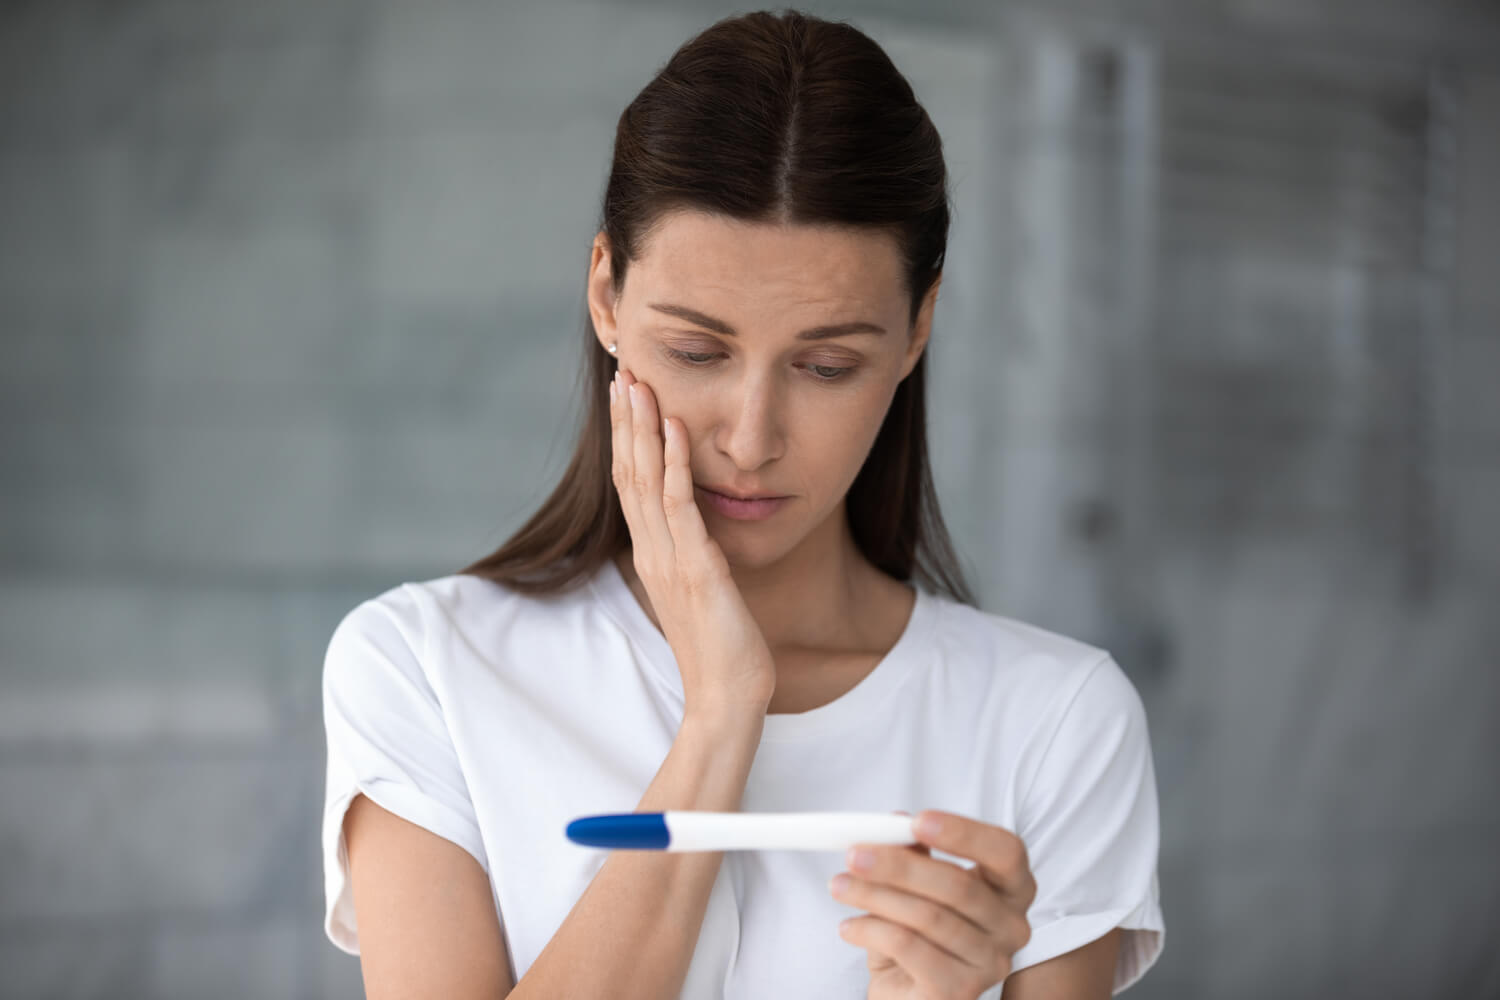 women worried seeing her pregnancy test